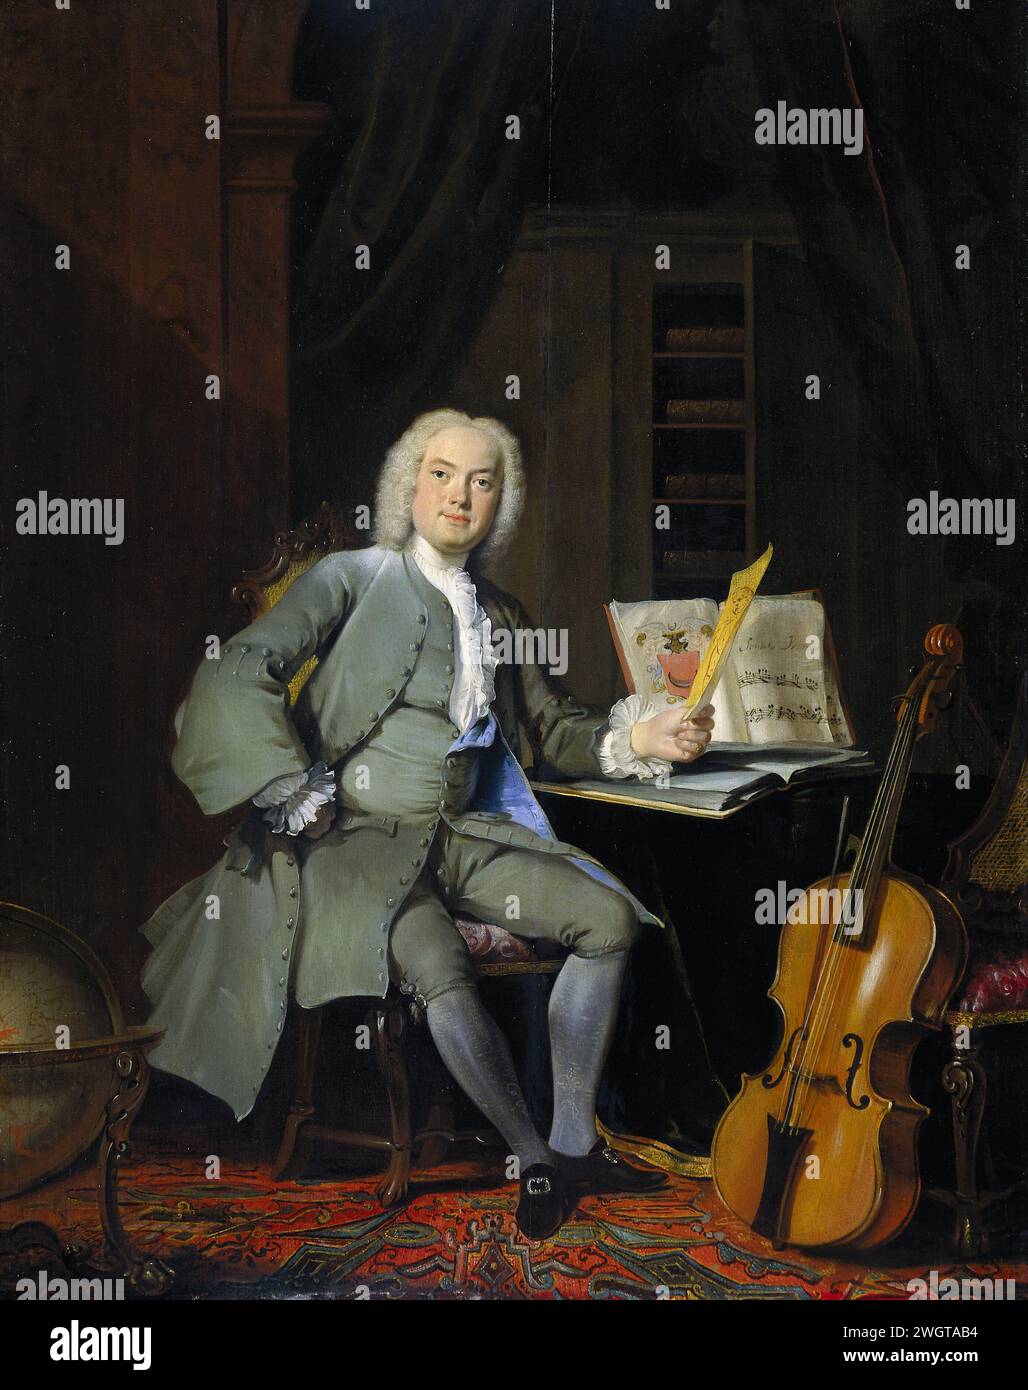 Ritratto fuori e membro della famiglia Van the Merch, Corlyis Trost, 1736 dipinto Ritratto di un amante dell'arte e della musica, probabilmente uno dei tre fratelli della famiglia battista Van der Mersch di Amsterdam. L'uomo è ritratto fuori di esso, seduto a un tavolo con un disegno in mano. Sul tavolo c'è un libro d'arte e un libro di musica con lo stemma della famiglia Van der Mersch, sulla destra contro una sedia c'è un violoncello appoggiato, un globo sulla sinistra. Pannello dei Paesi Bassi settentrionali. vernice a olio (vernice) globo. viola, violoncello; contrabbasso. disegno, schizzo. cuscinetto araldico, araldica. manoscritto di partitura musicale Foto Stock